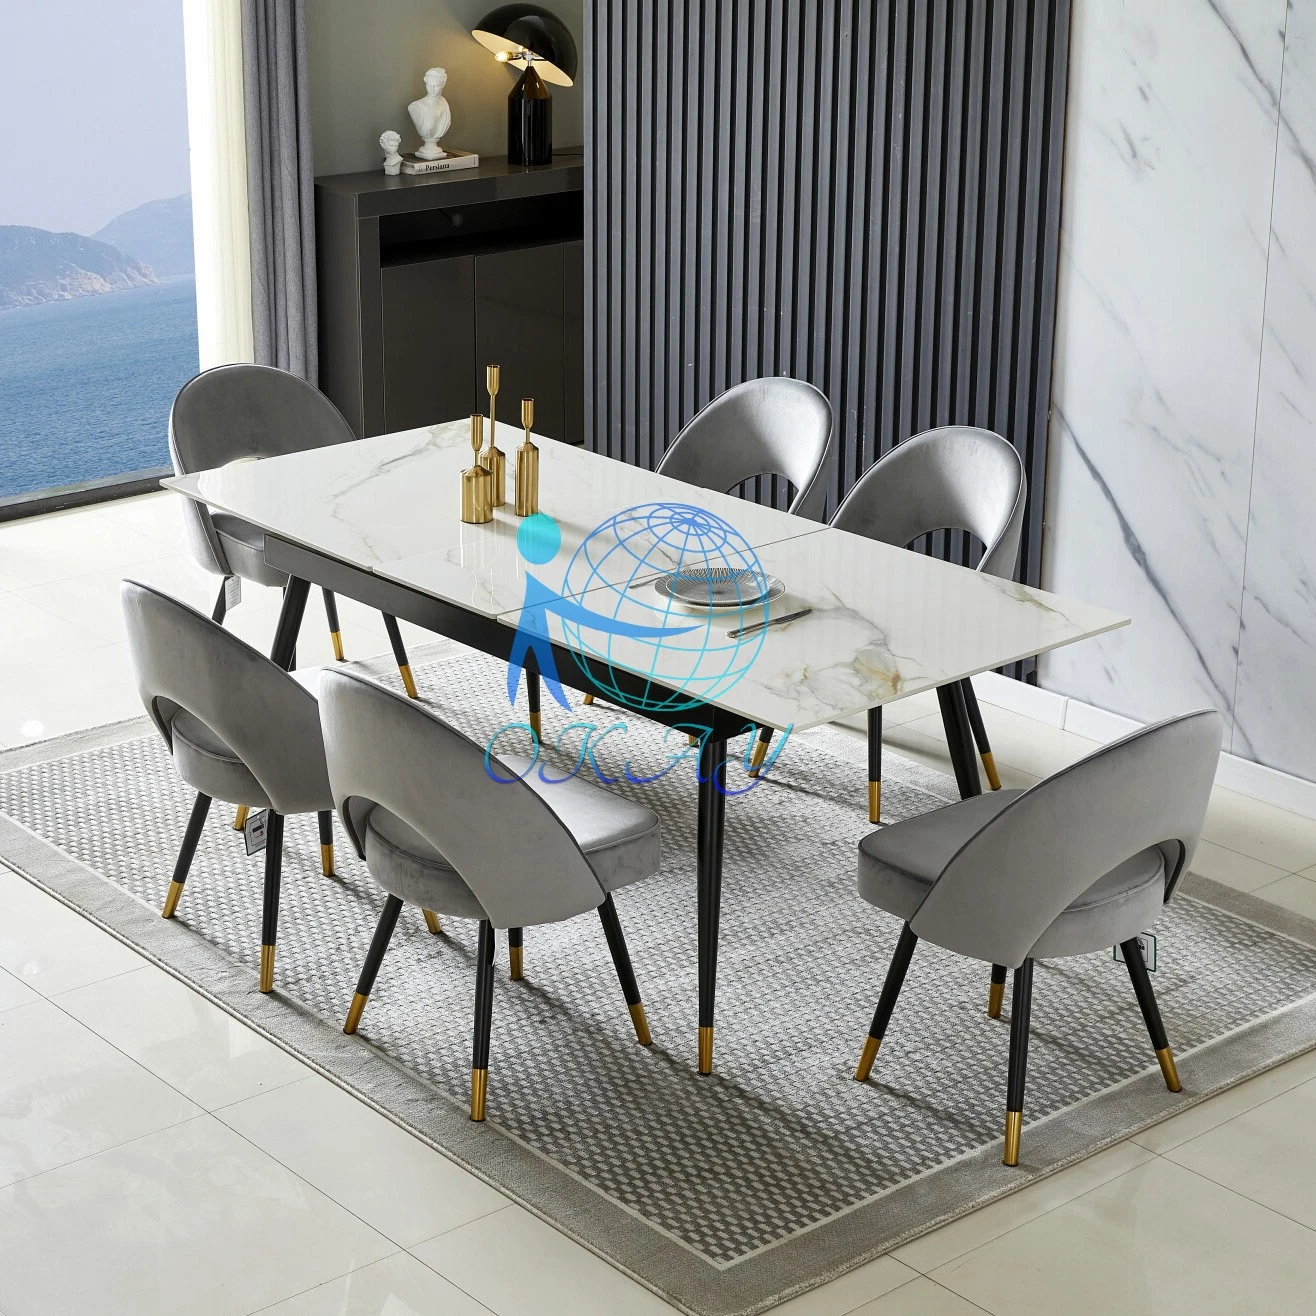 2022 OK meilleur vendeur High Gloss Italia table à manger en céramique Avec les pieds métalliques, soulever le dessus central